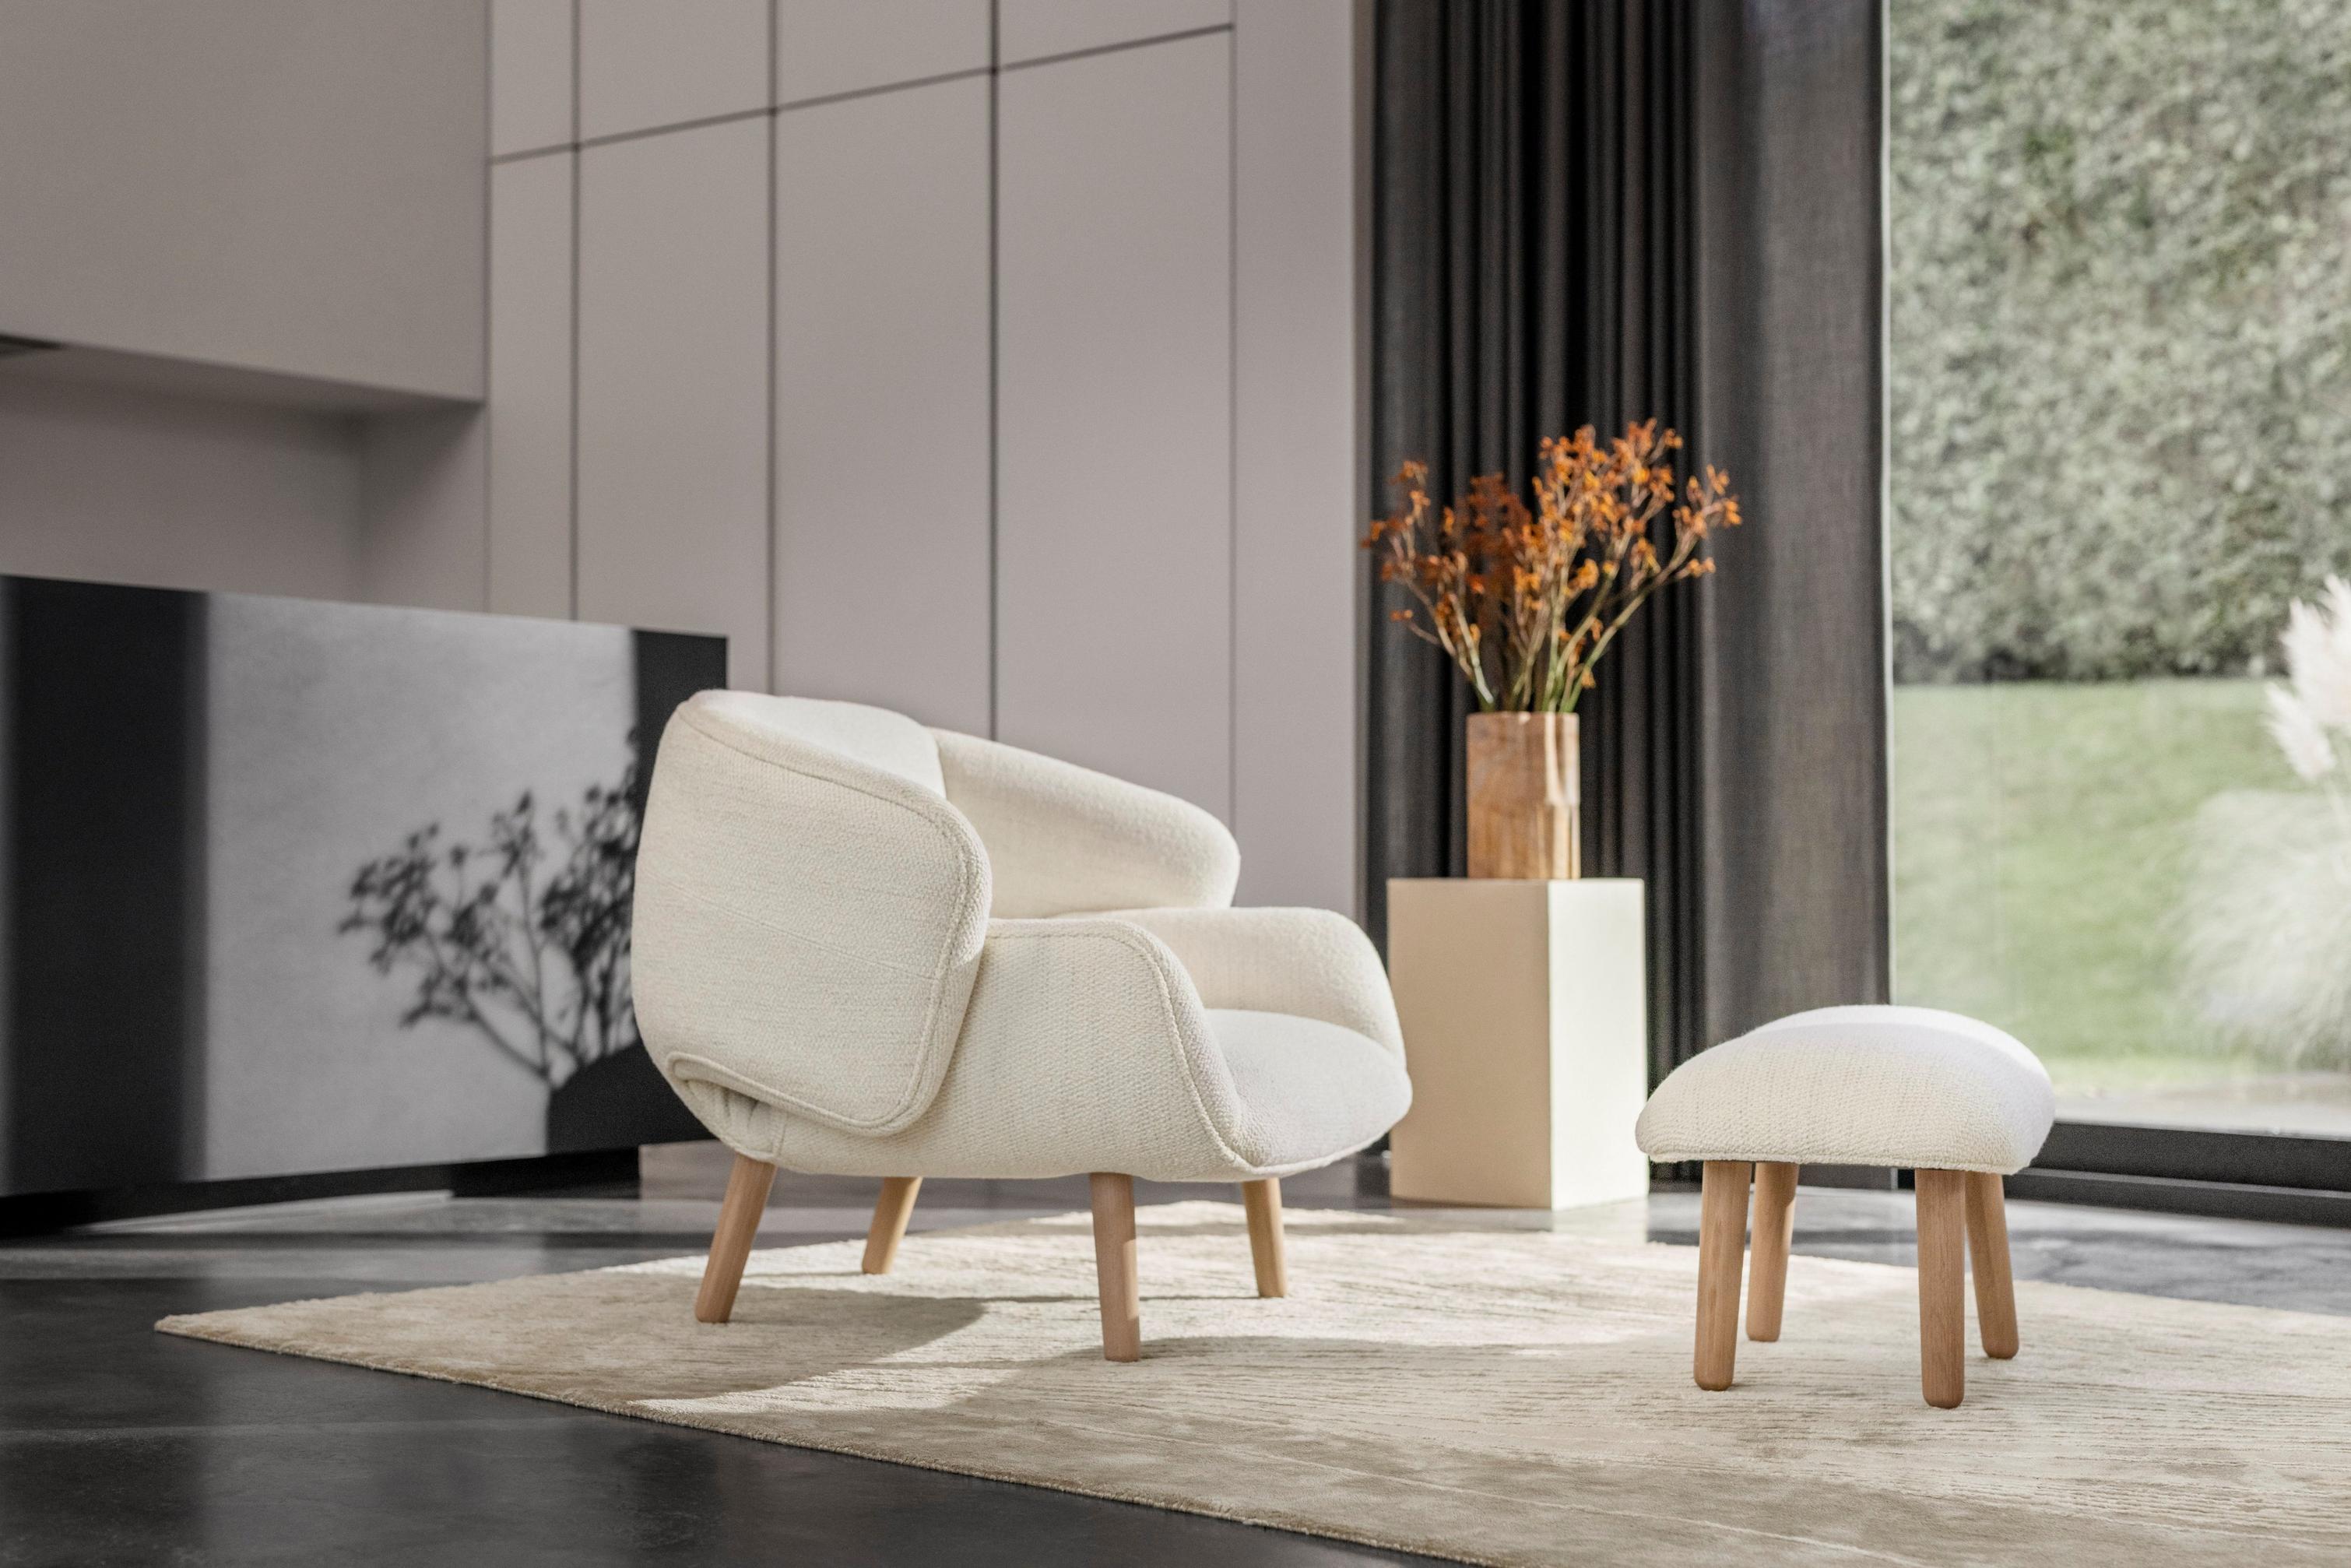 Lichte woonkamer met de Fusion stoel in witte Lazio stof en bijpassende voetenbank.